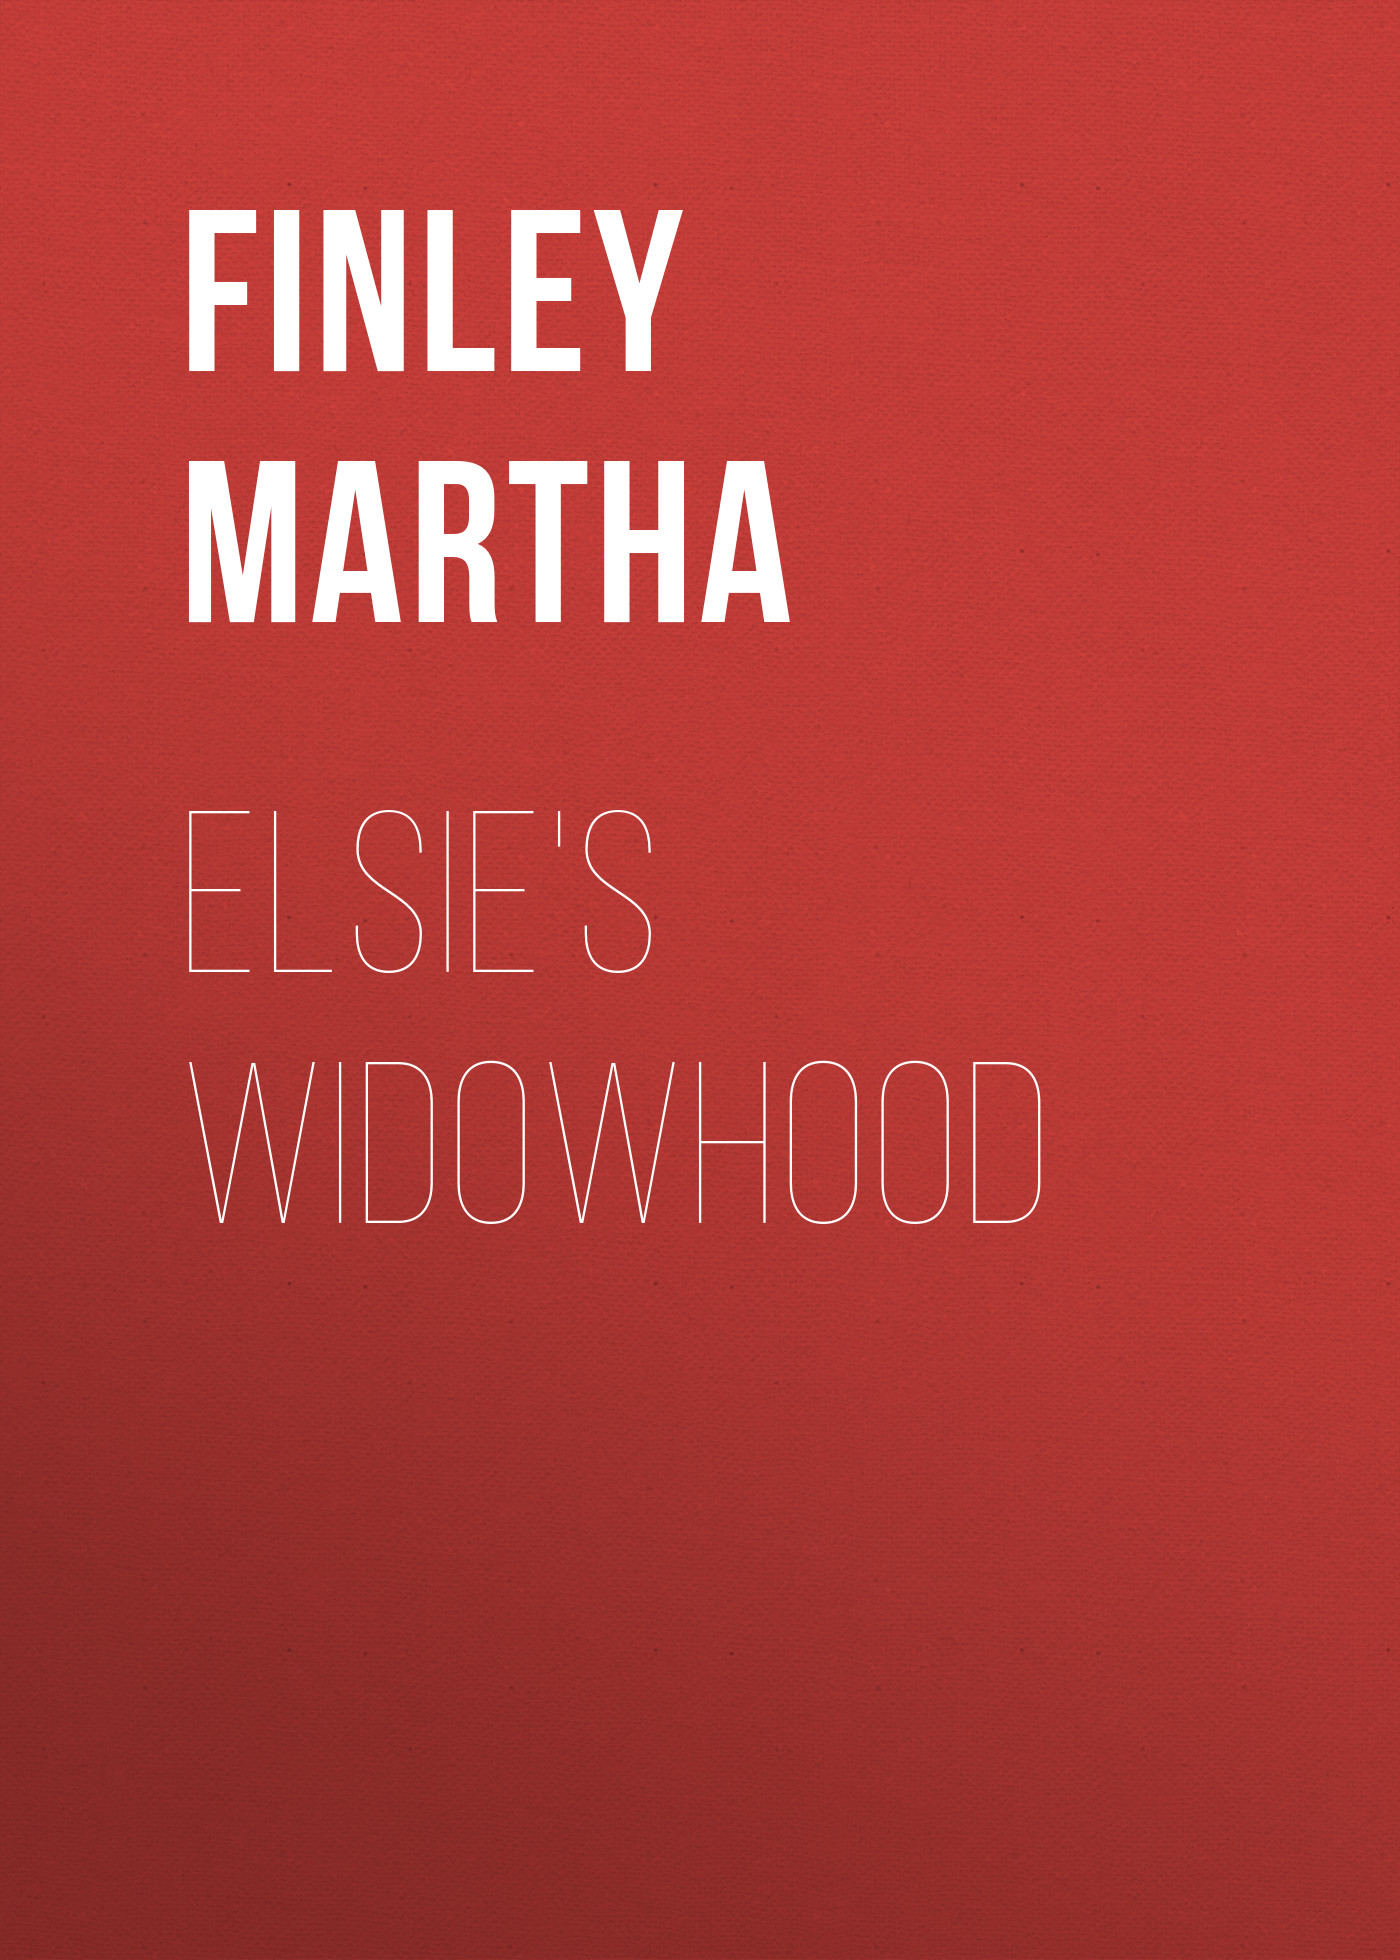 Finley Martha Elsie's Widowhood